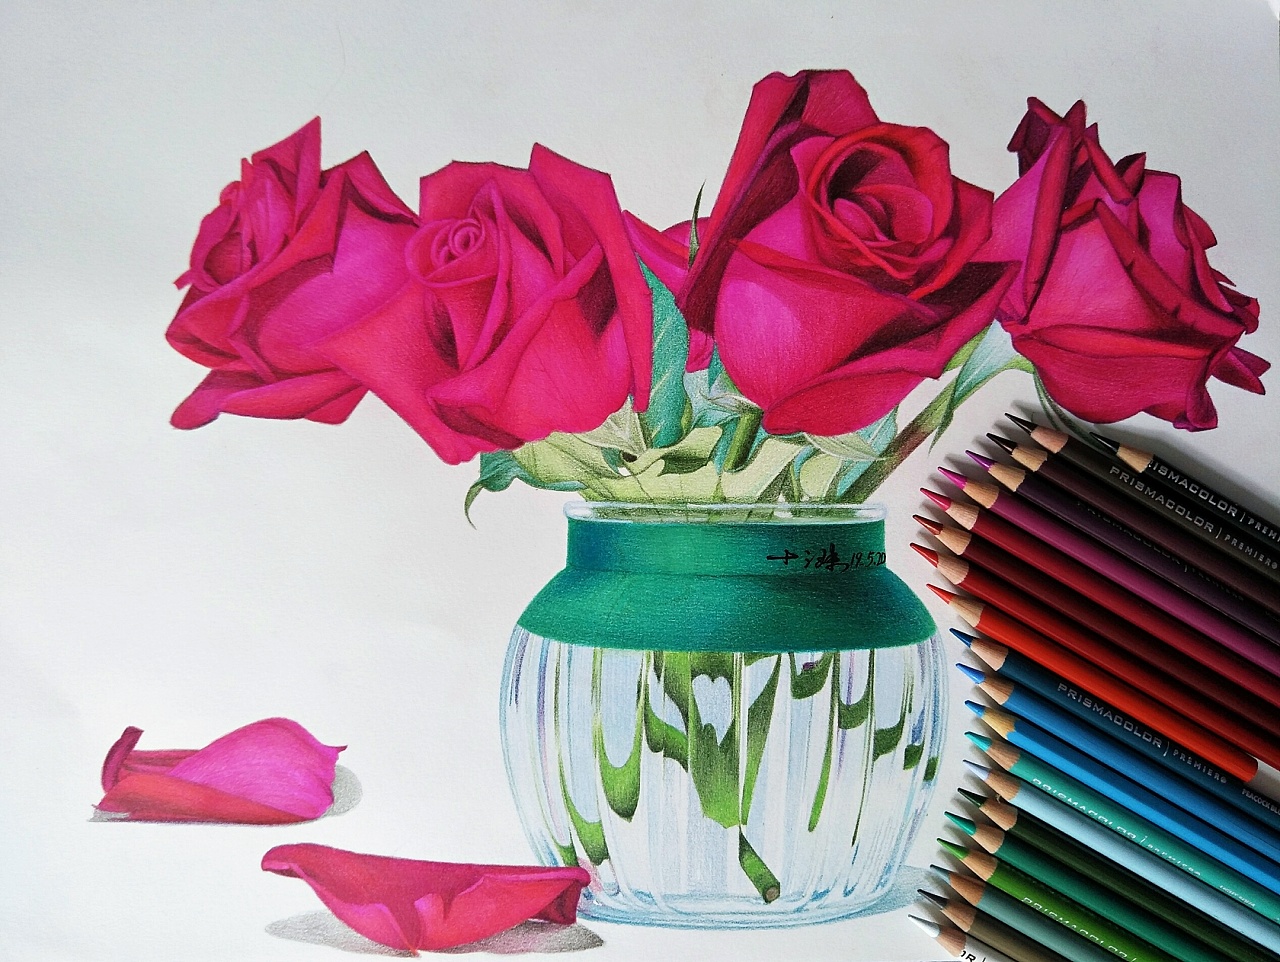 玫瑰月季彩铅画玻璃花瓶插花